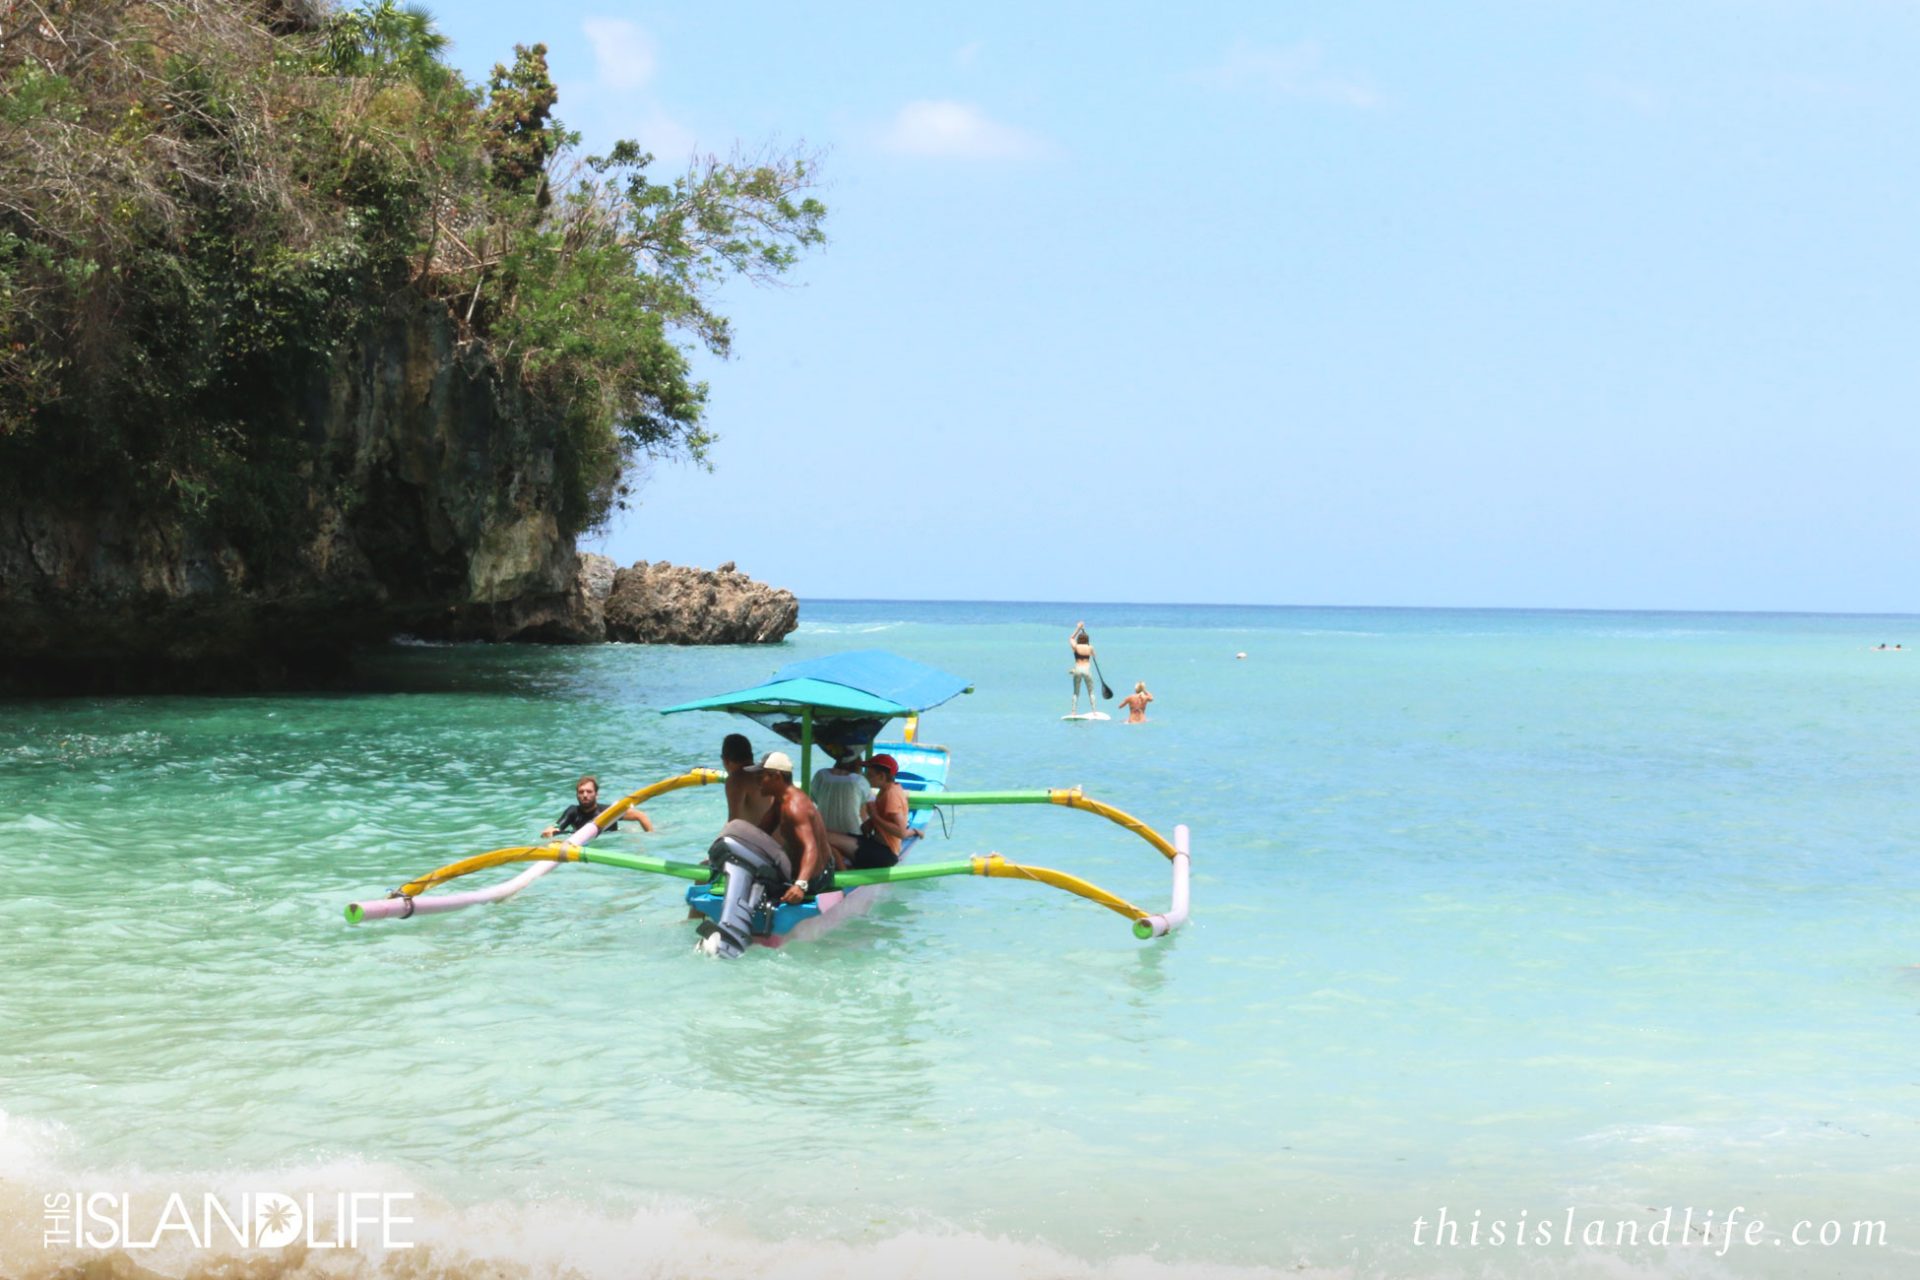 THIS ISLAND LIFE | Padang Padang Beach in Bali